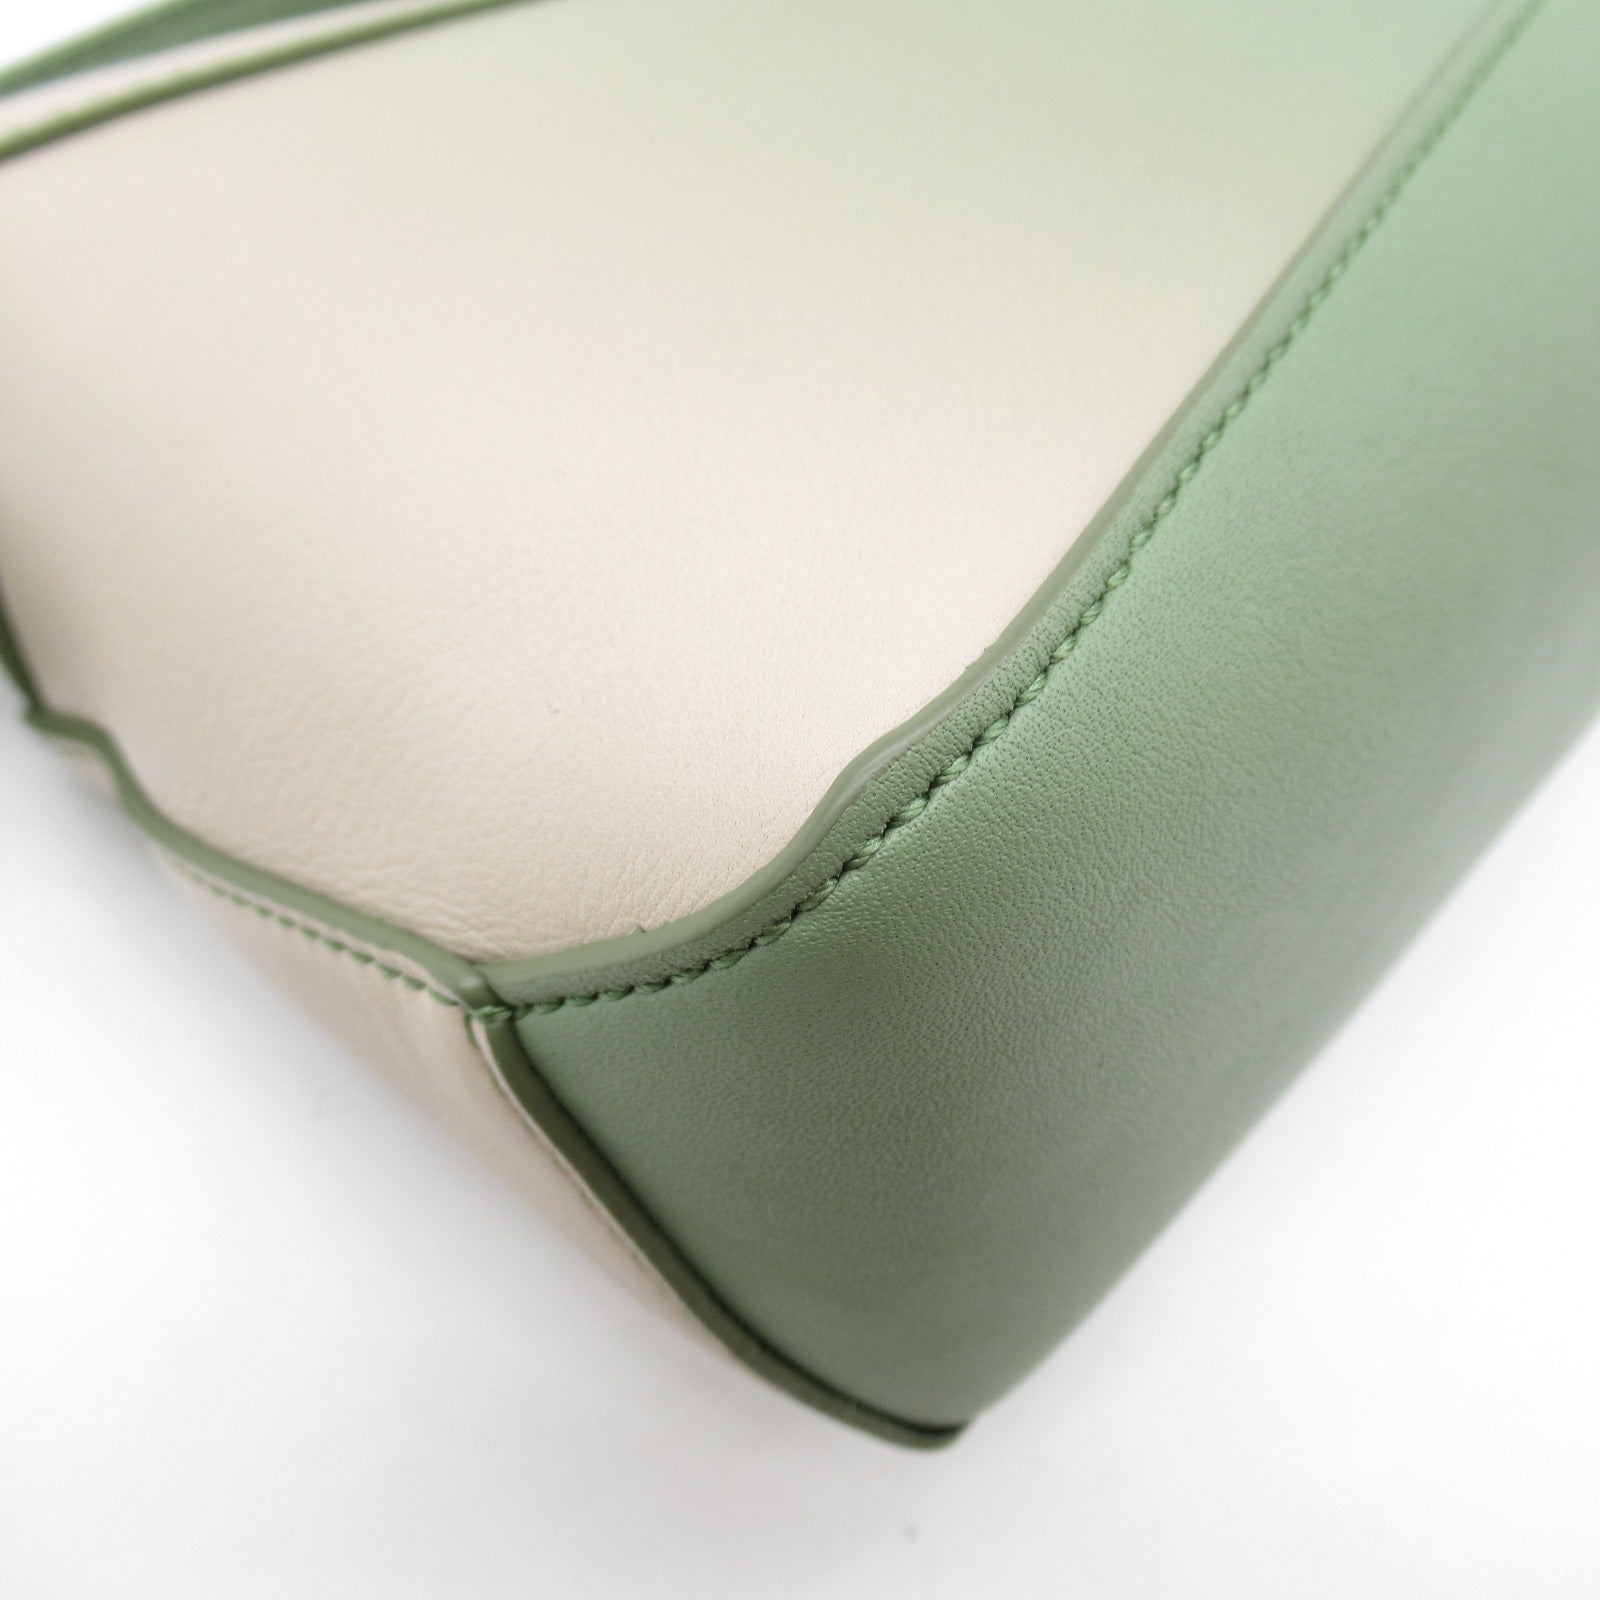 Loew 2w Shoulder Bag 2way Shoulder Bag Leather  Green